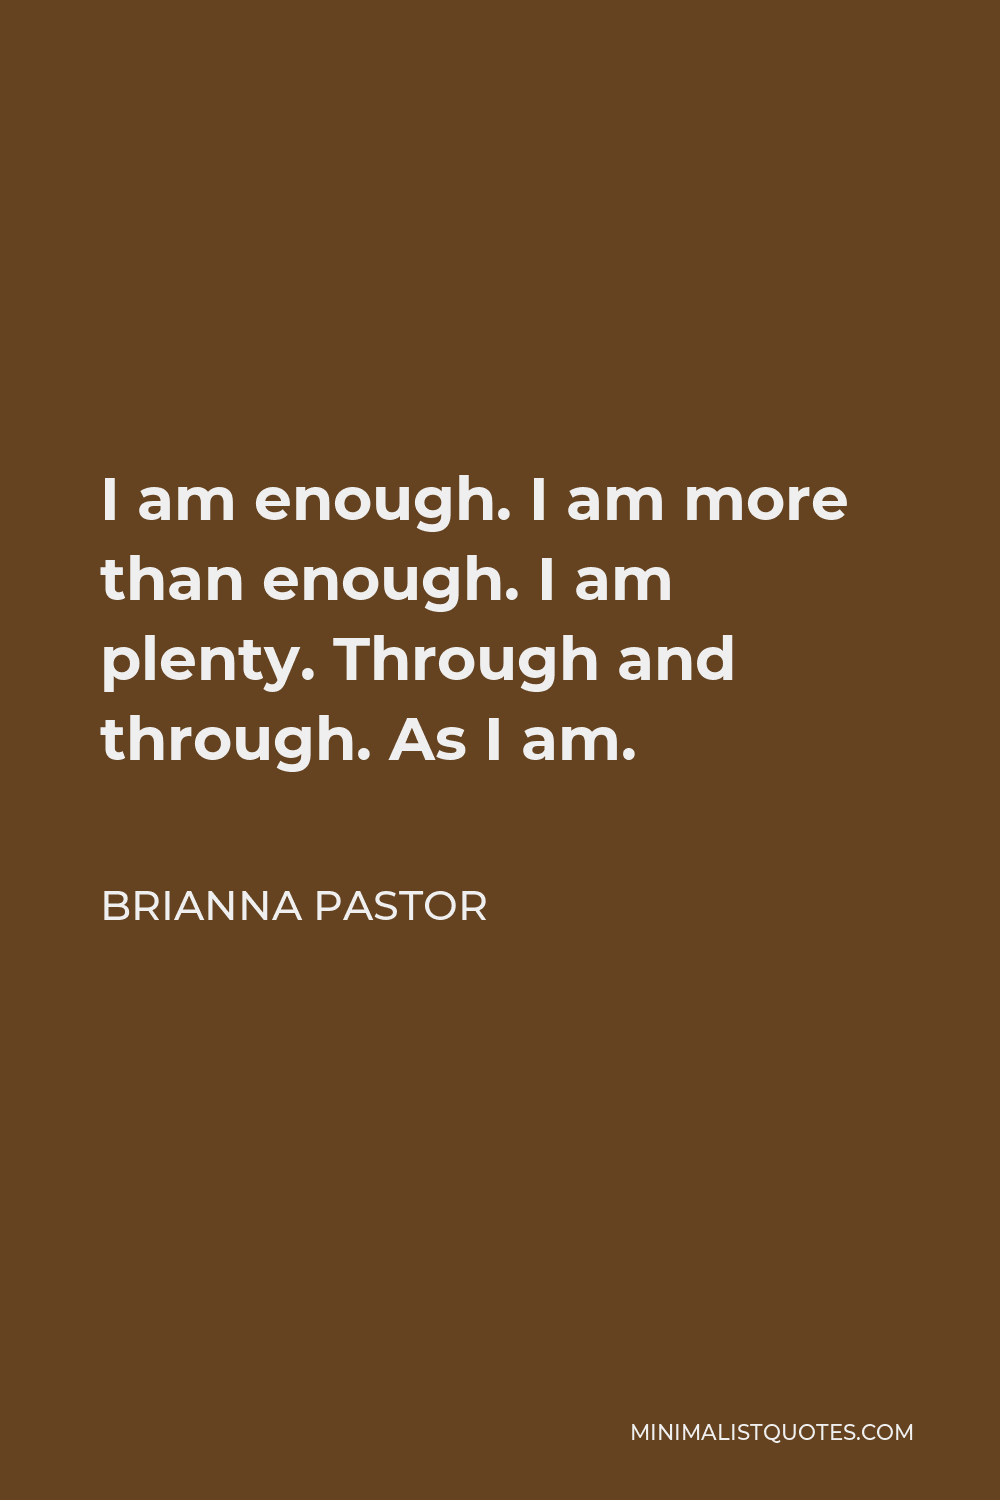 Brianna Pastor Quote - I am enough. I am more than enough. I am plenty. Through and through. As I am.